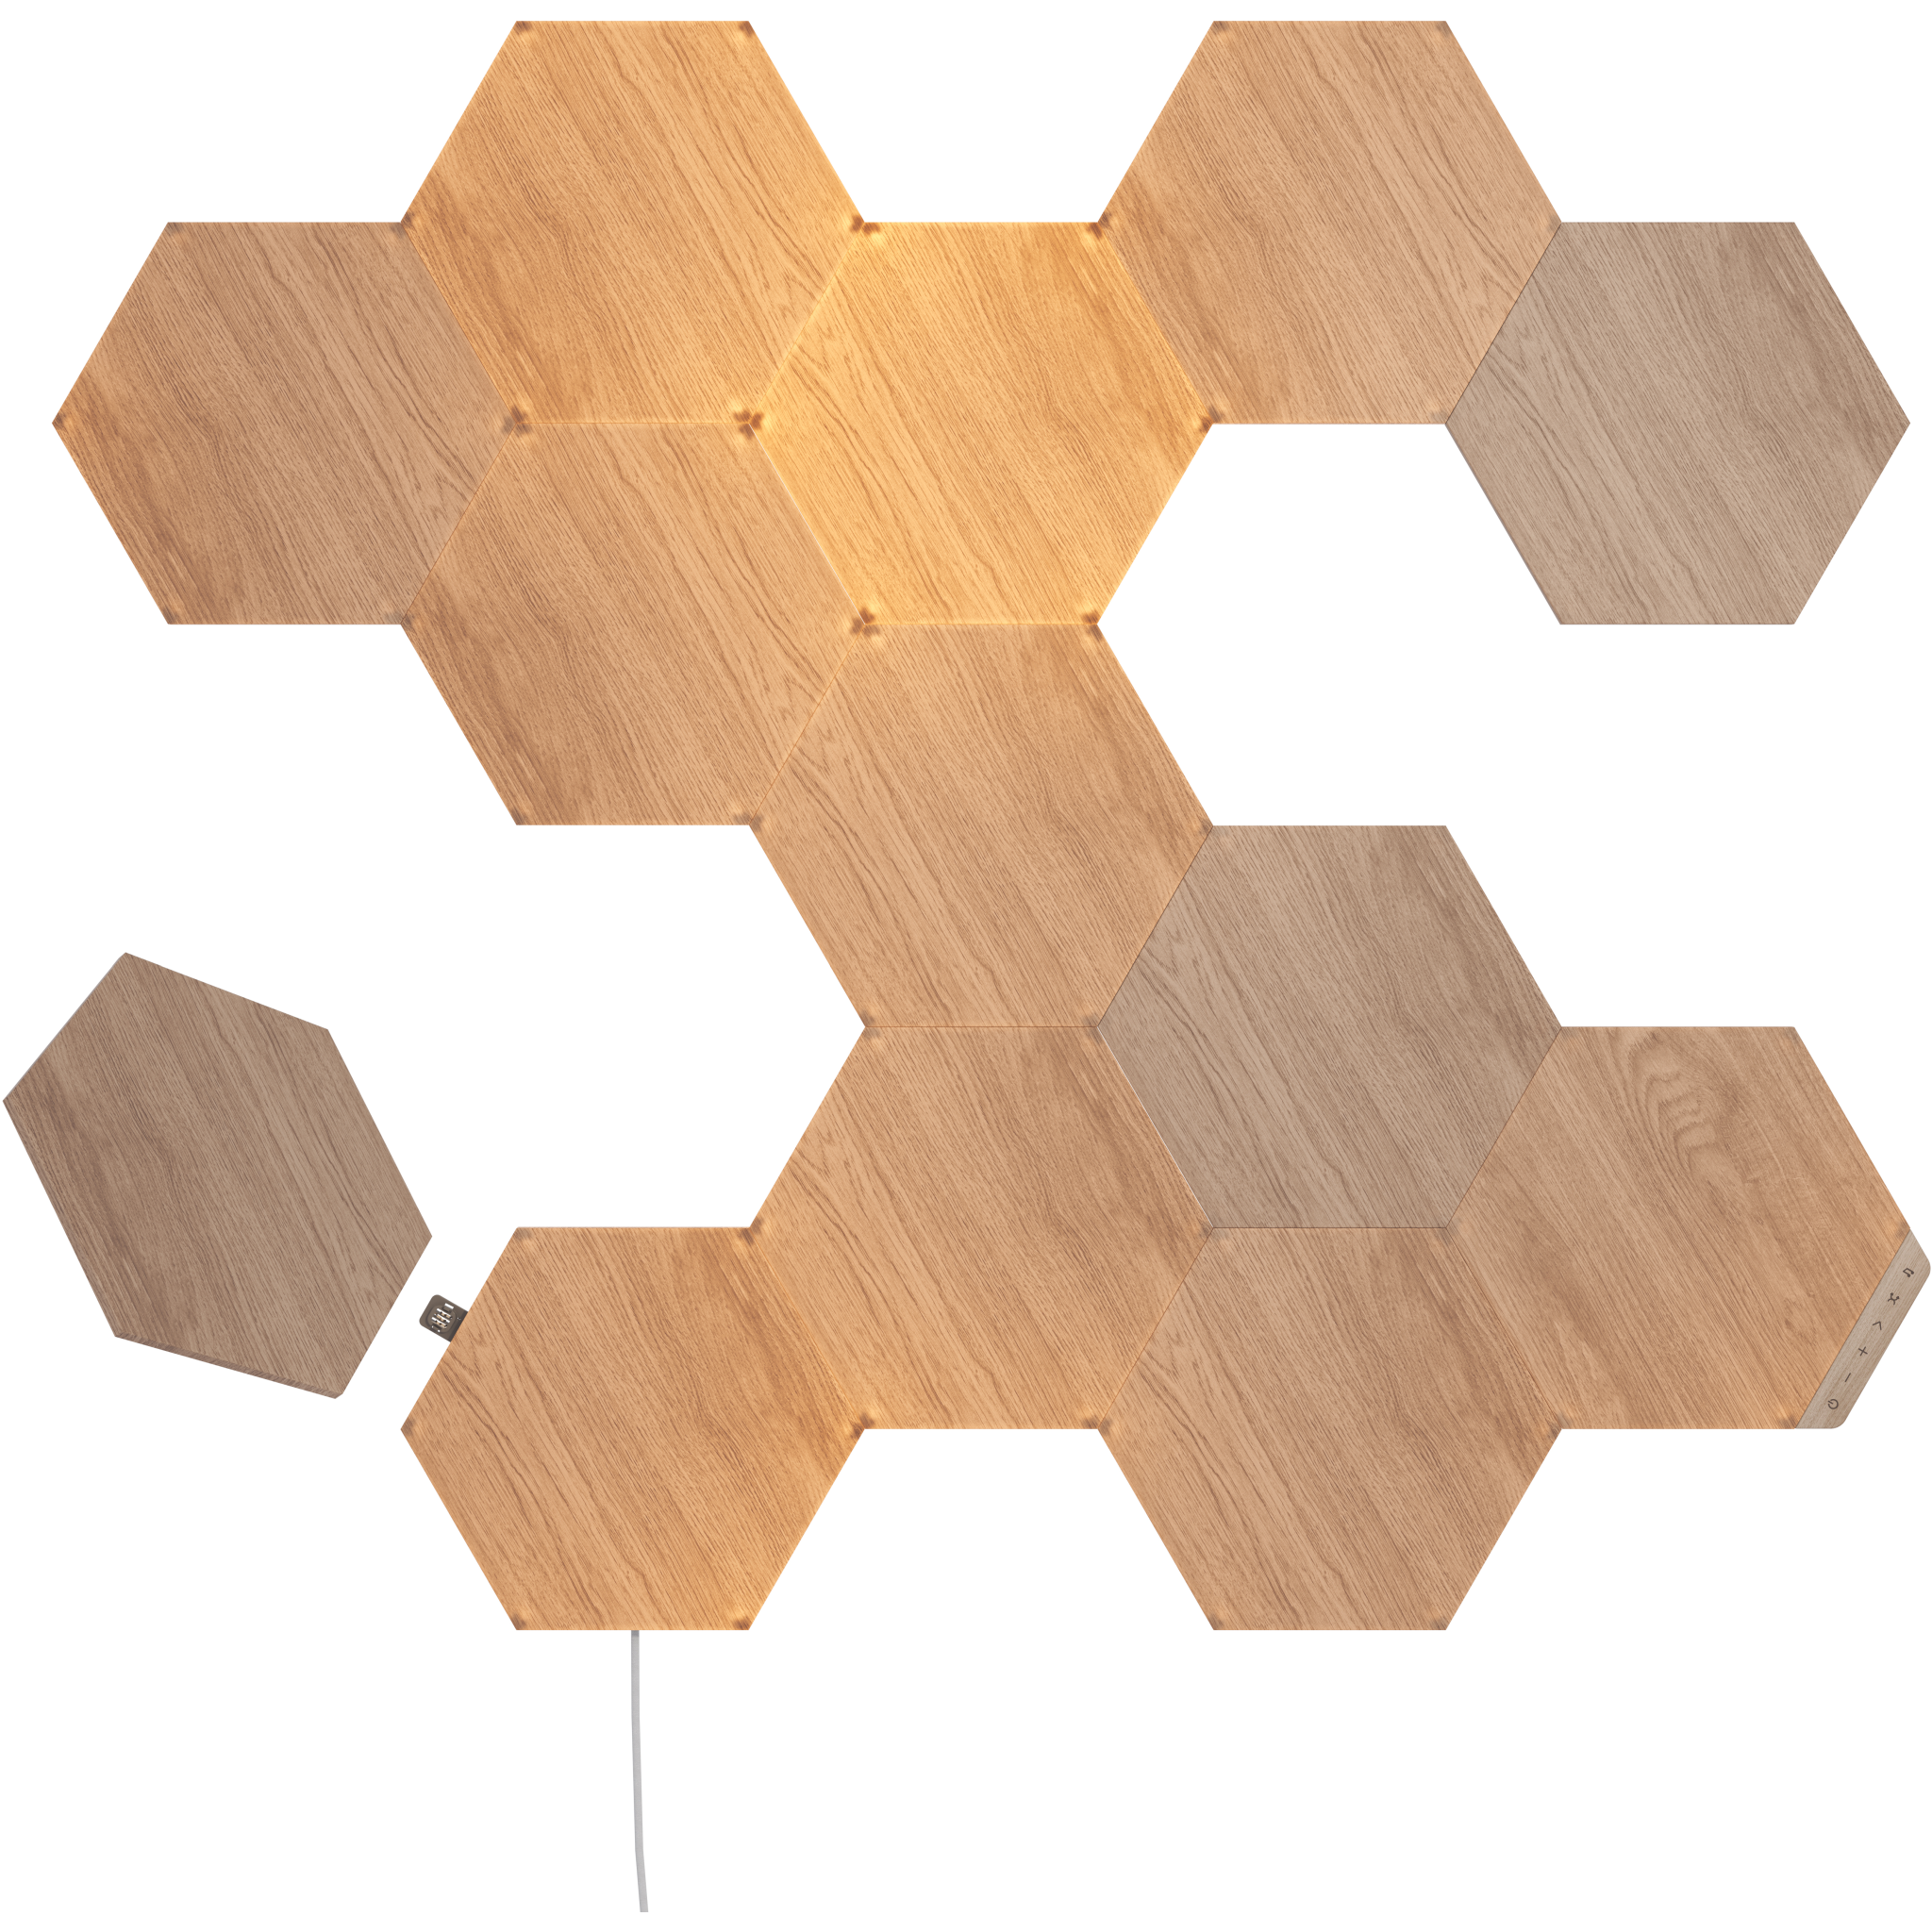 840102703924 Nanoleaf Elements Hexagons Starter Kit 13PK Hus & Have,Smart Home,Smart belysning 15600002870 NL52-K-3002HB-13PK